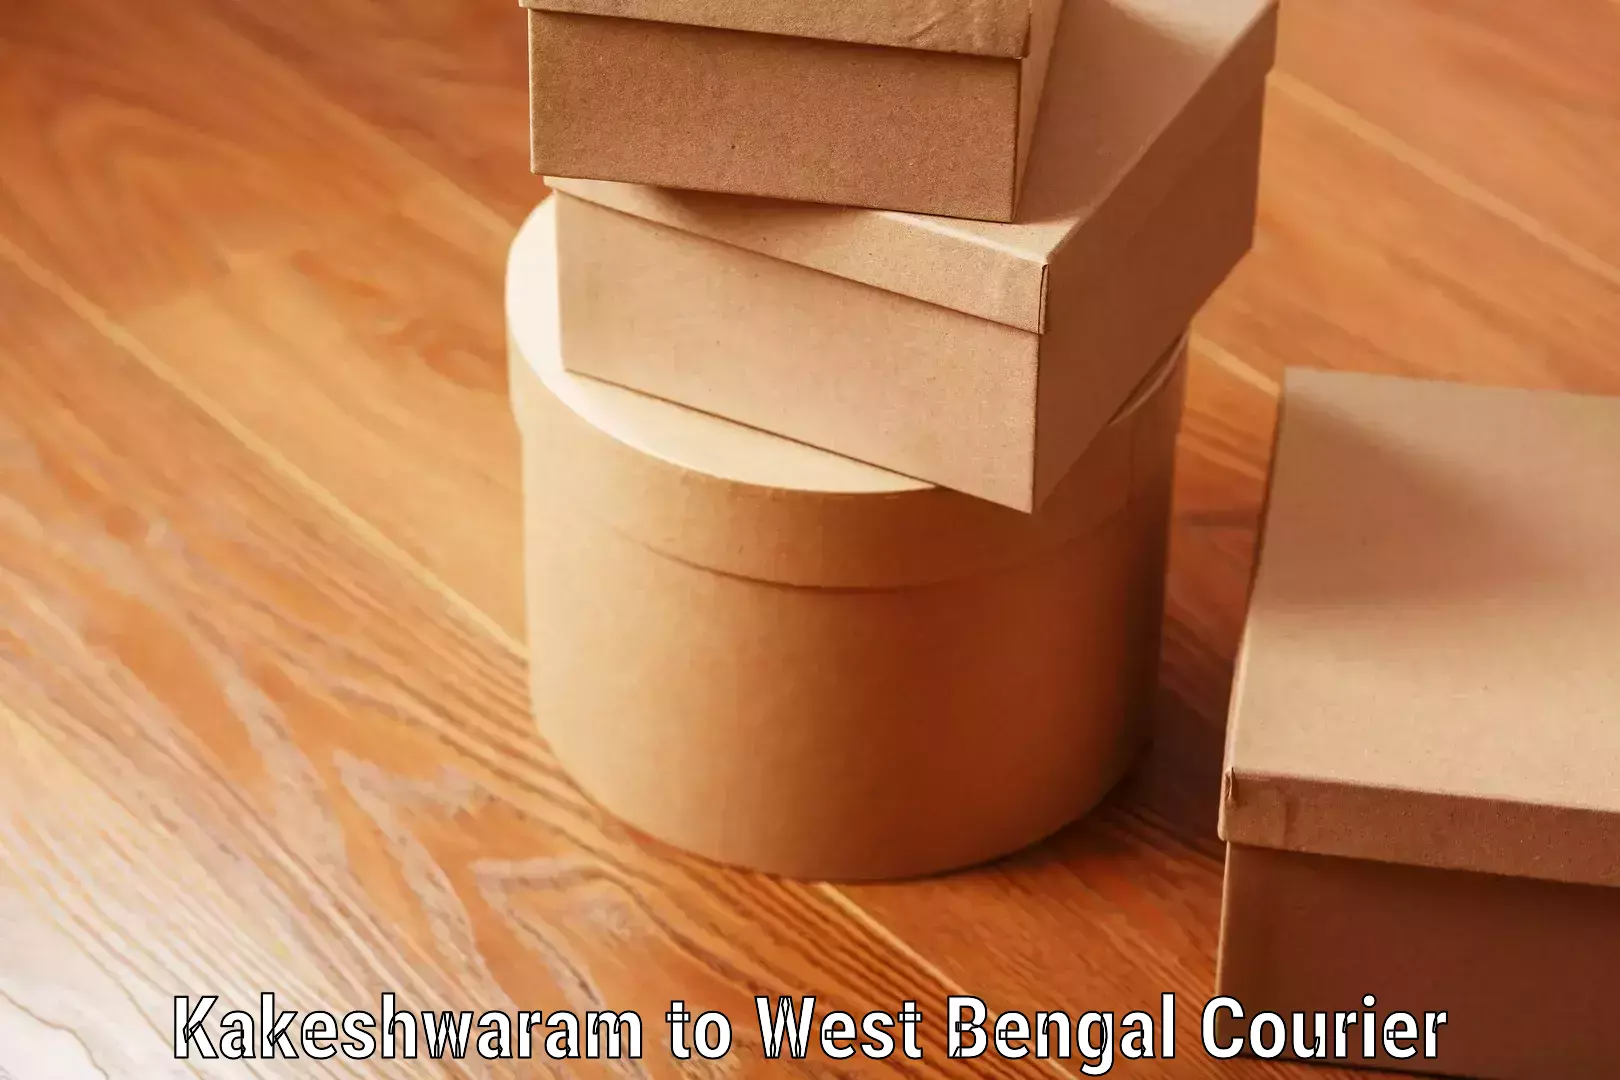 Baggage transport services Kakeshwaram to West Bengal